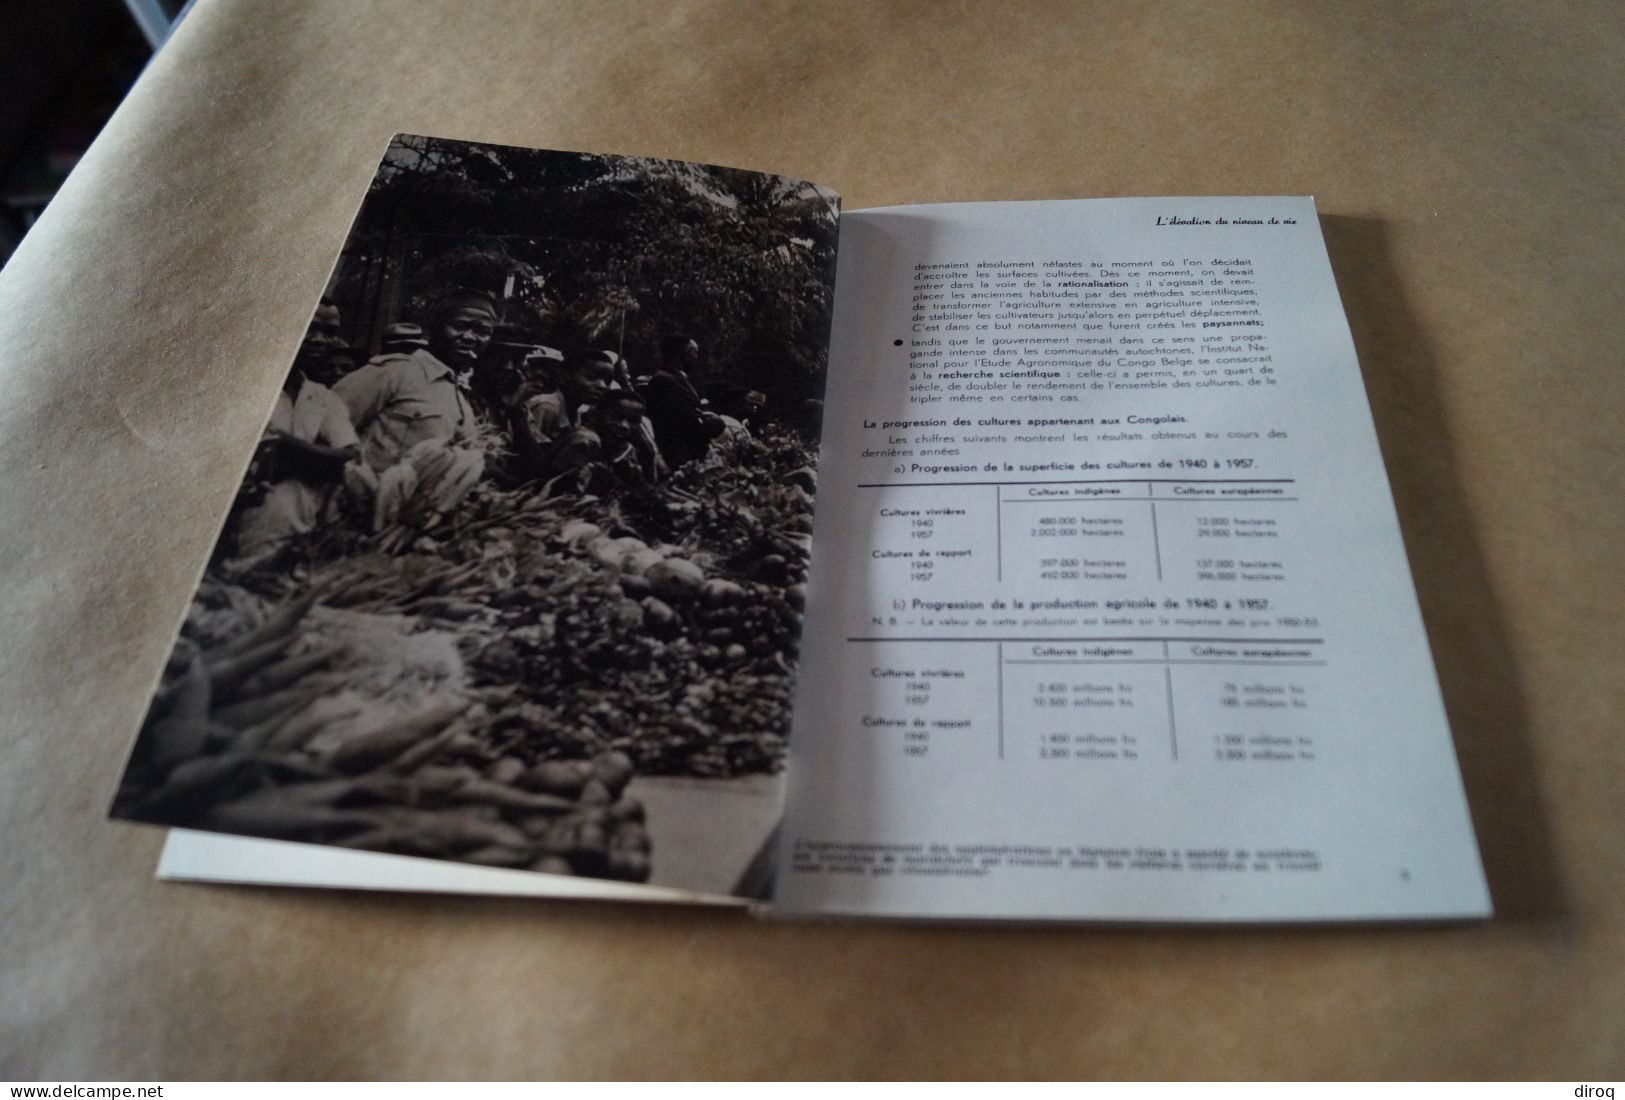 Congo Belge,1957, 13 Millions De Congolais,80 Pages,24 Cm. Sur 16 Cm. - Non Classés